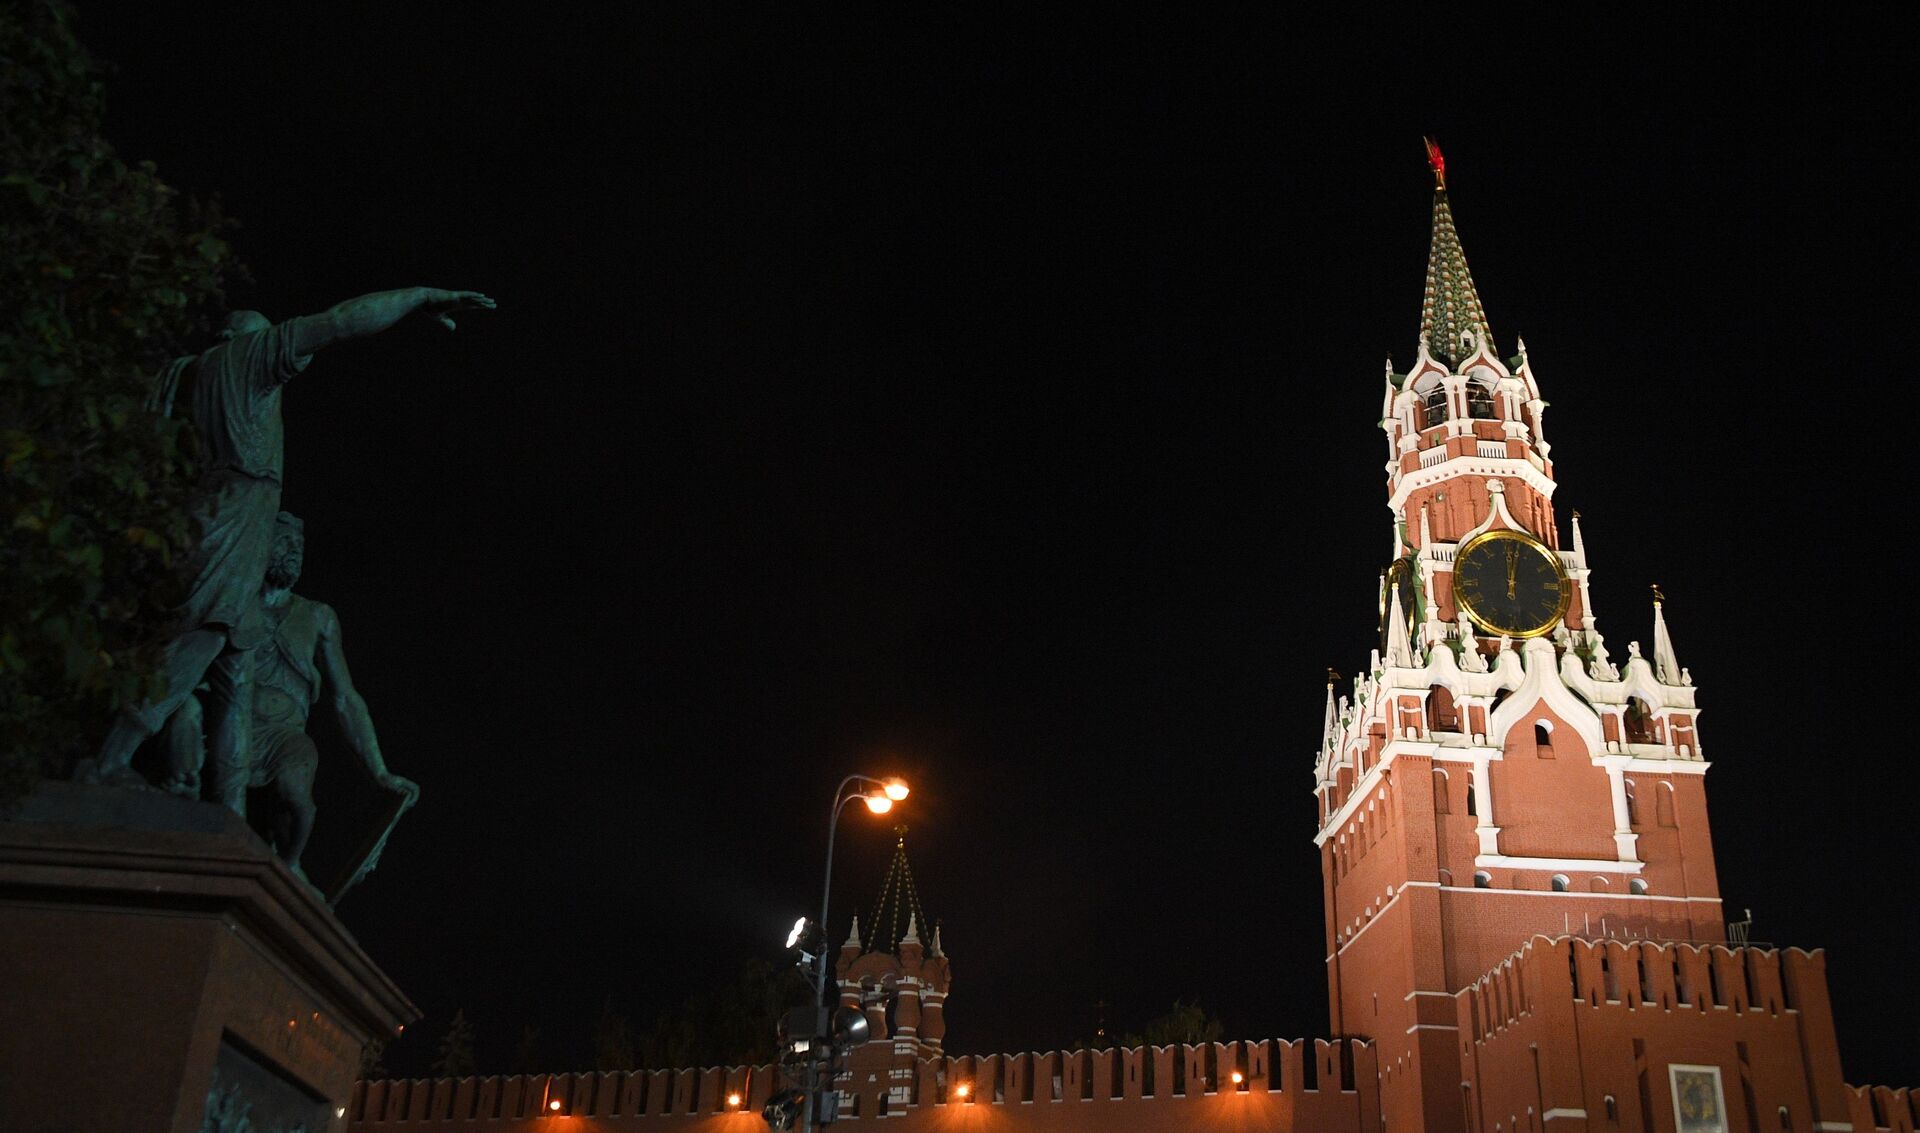 Tri zanimljivosti o moskovskom Kremlju koje golicaju maštu /foto/ - Sputnik Srbija, 1920, 03.02.2021